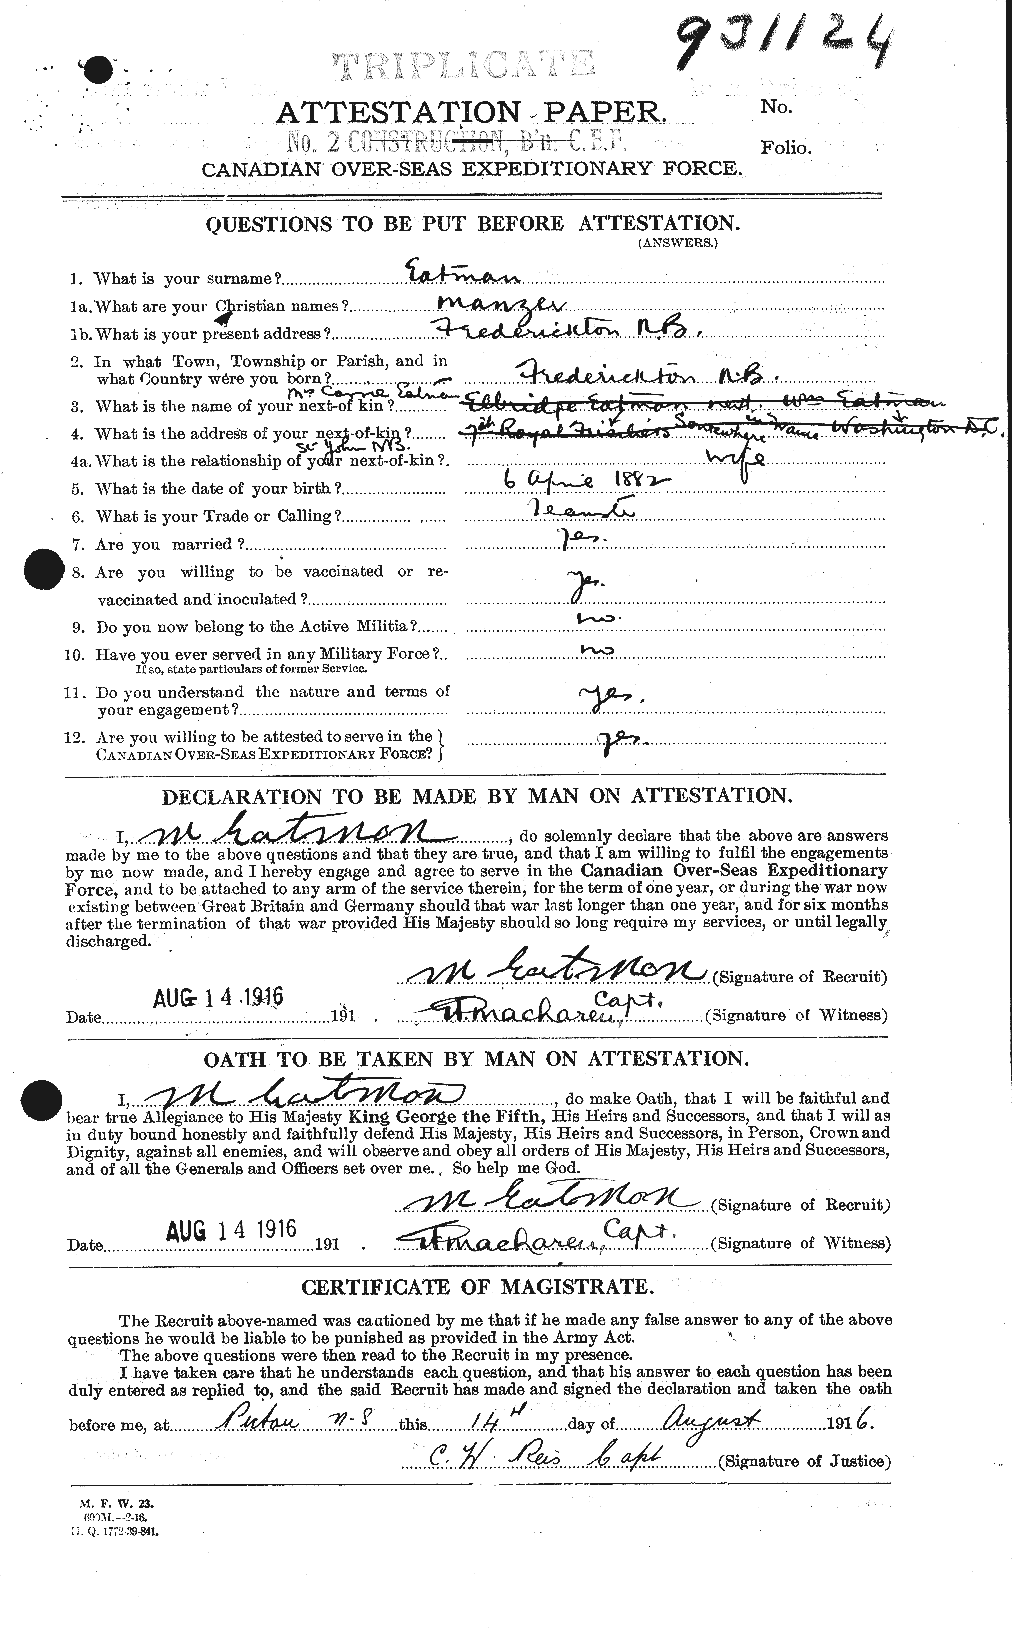 Dossiers du Personnel de la Première Guerre mondiale - CEC 308348a